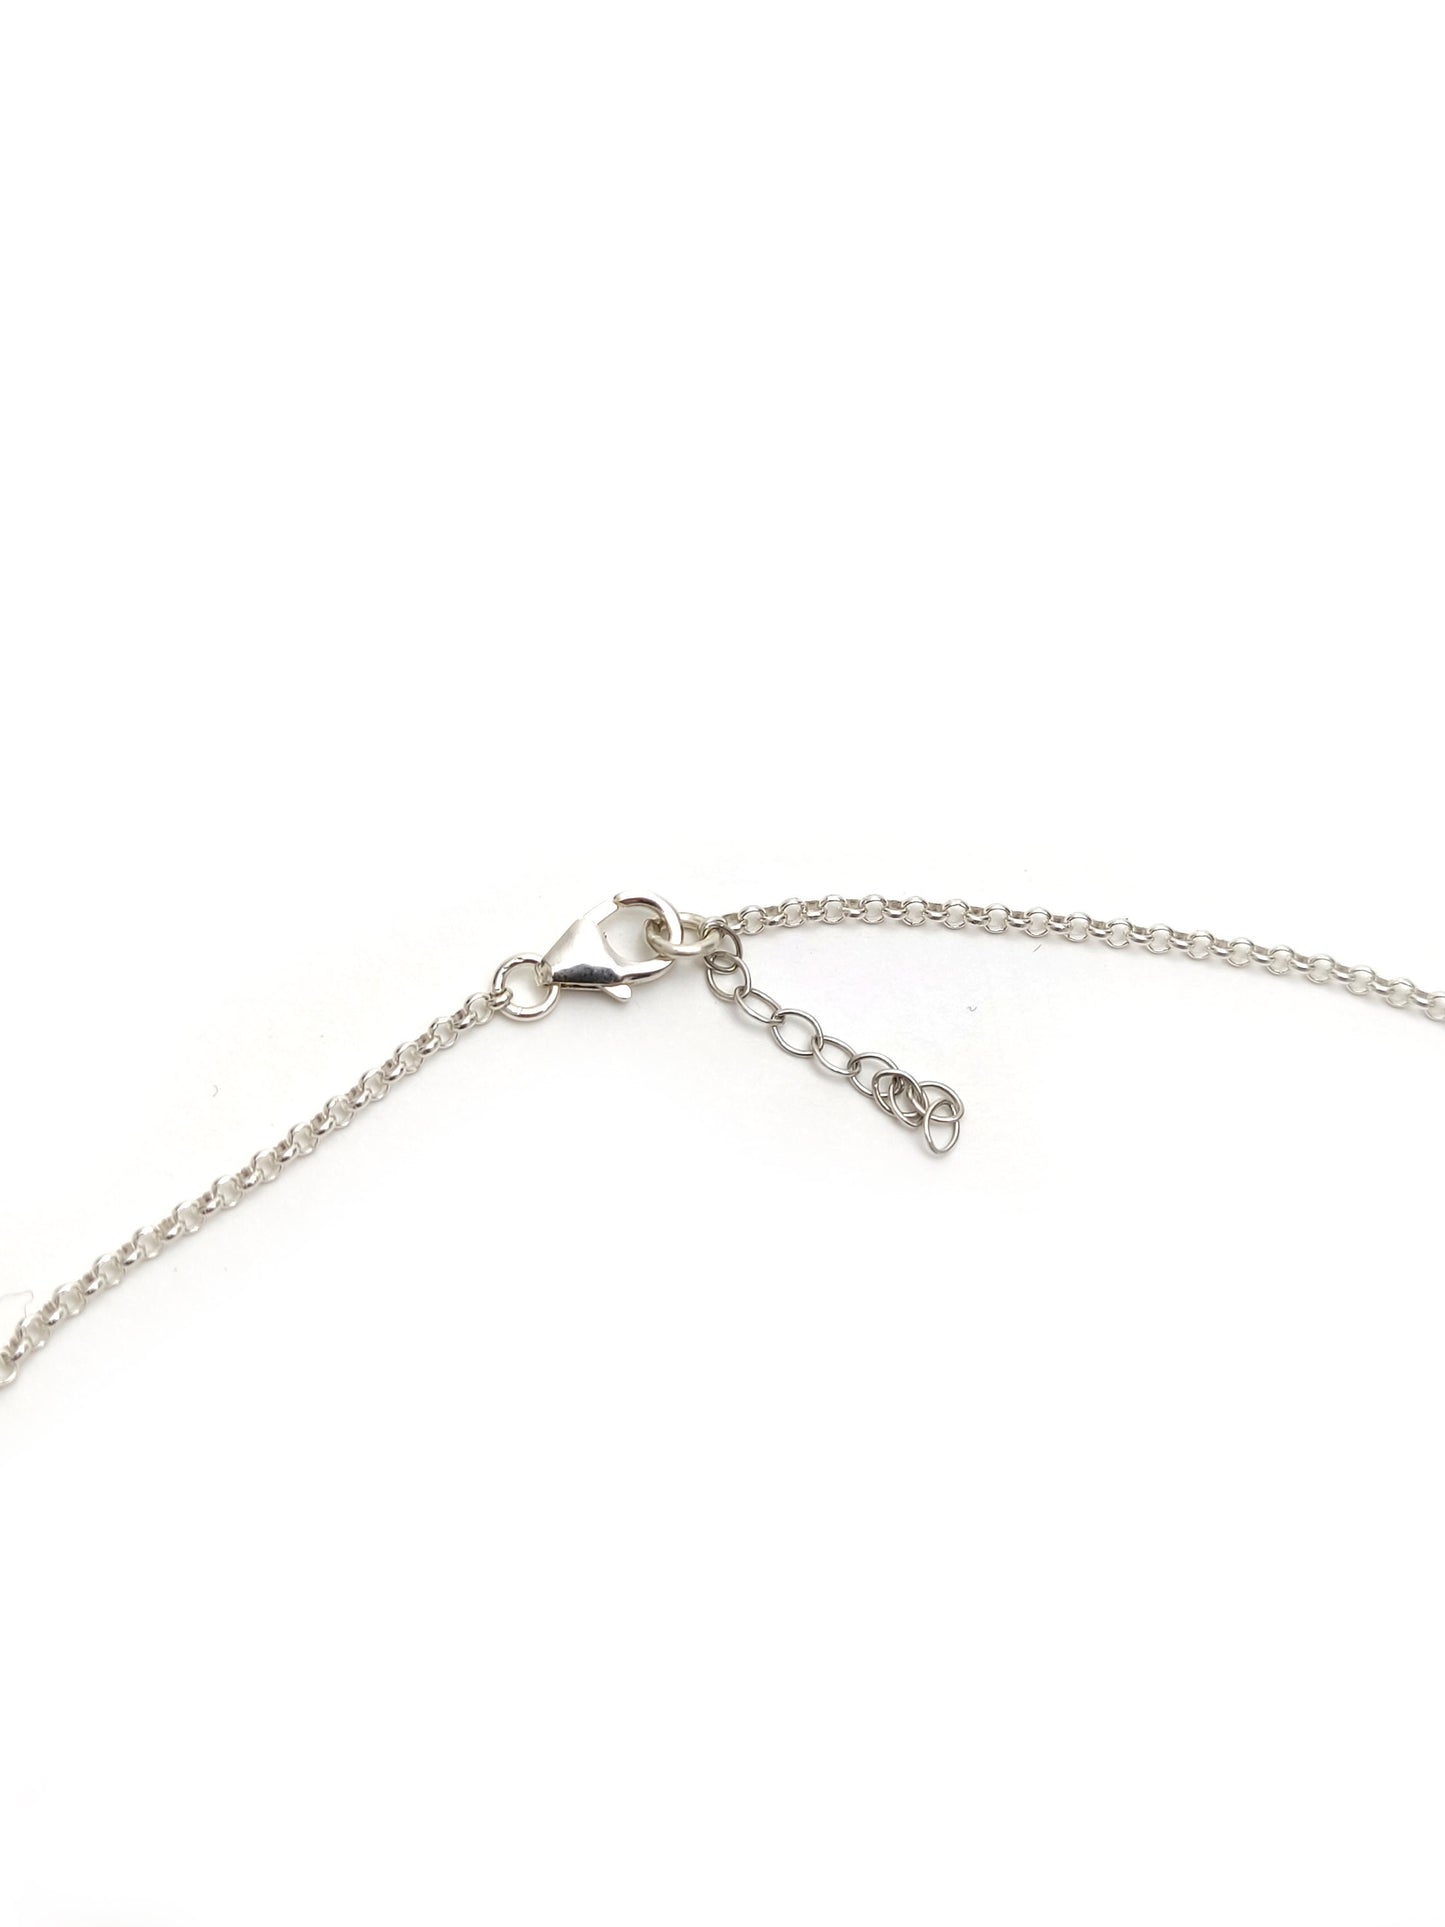 Greek Silver Necklace, Meander Turquoise Stone Chain Fine Necklace, Griechischer Silber Schmuck Halskette, Bijoux Collier De Grece, Greece